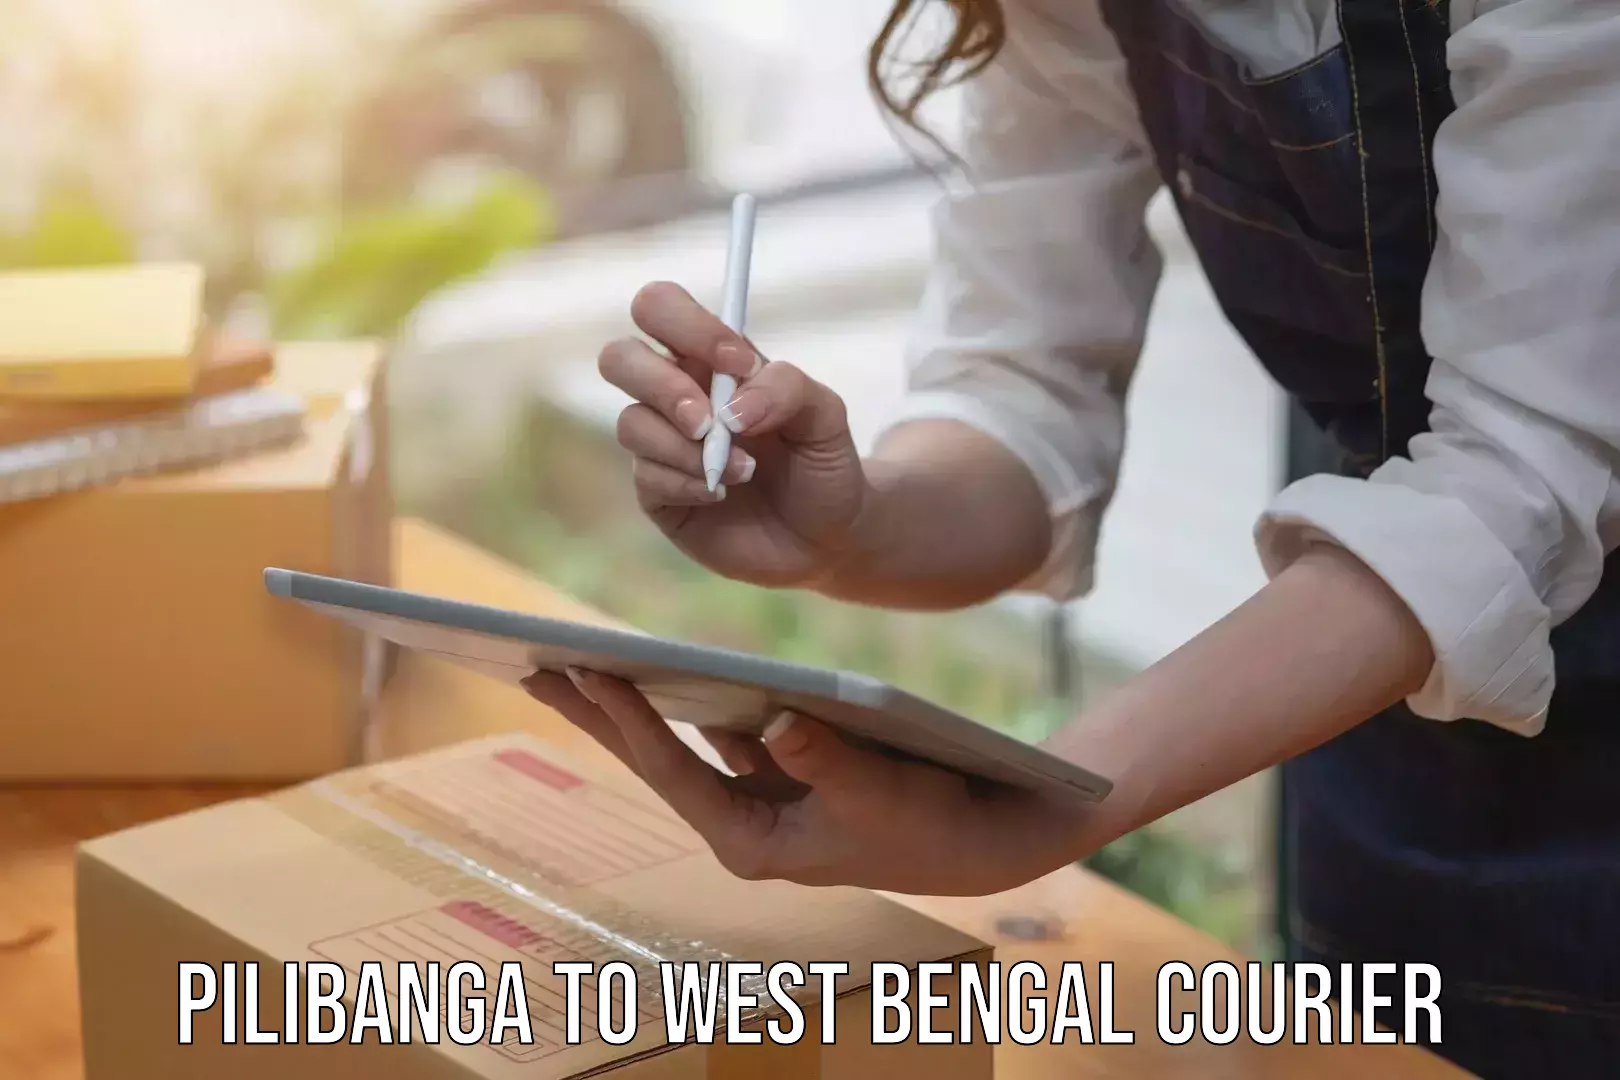 Door-to-door freight service Pilibanga to West Bengal